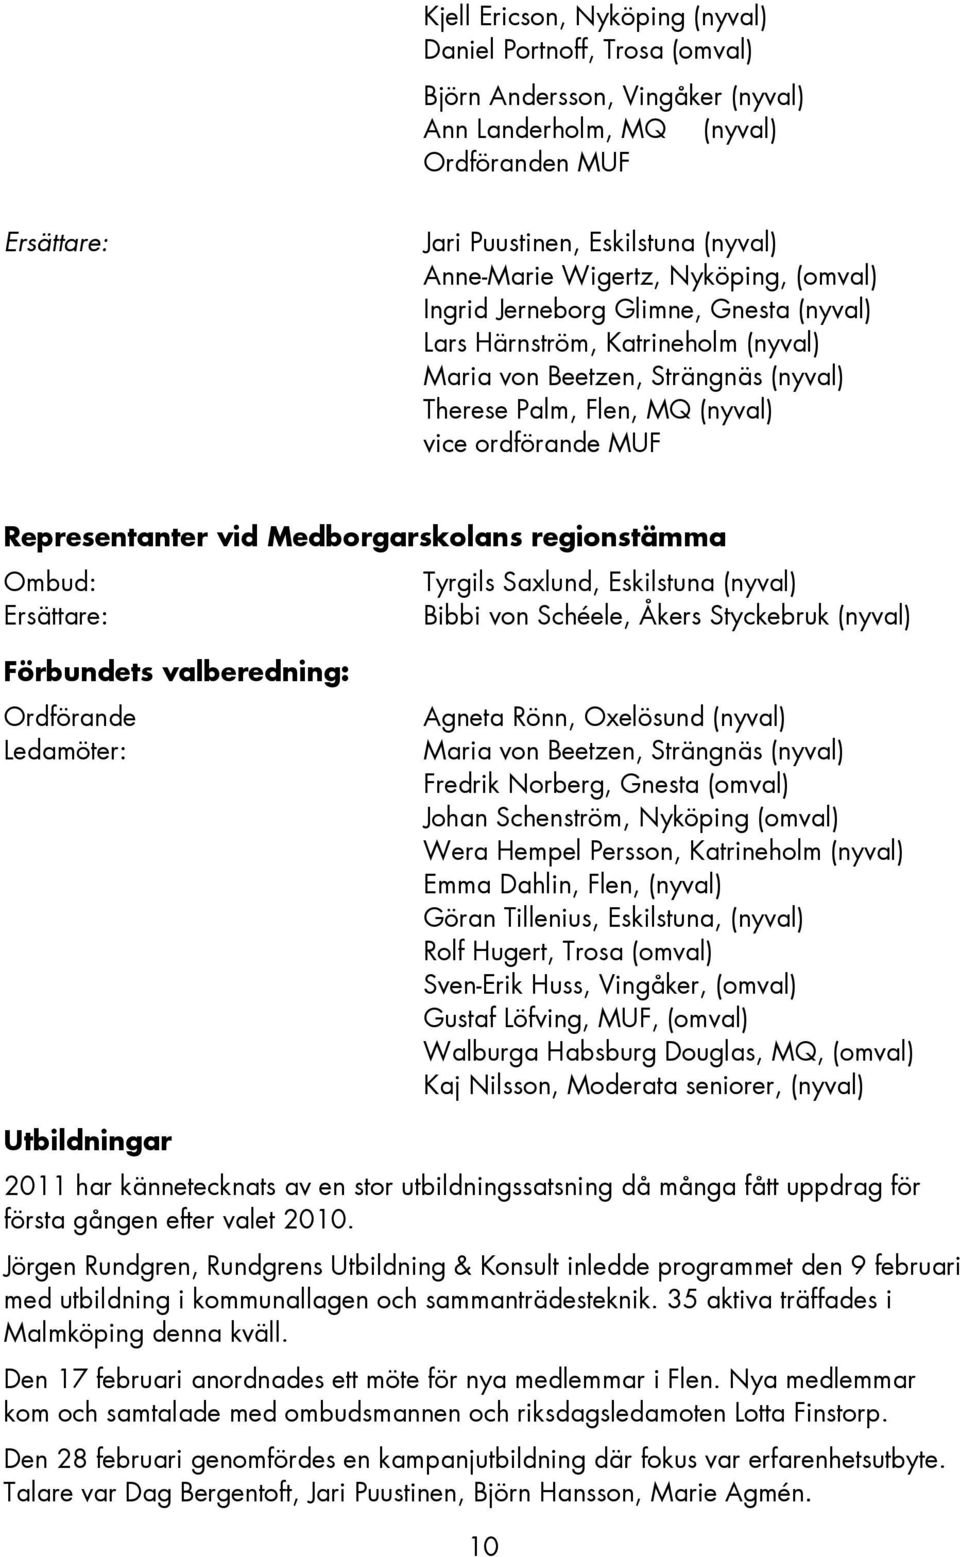 Representanter vid Medborgarskolans regionstämma Ombud: Tyrgils Saxlund, Eskilstuna (nyval) Ersättare: Bibbi von Schéele, Åkers Styckebruk (nyval) Förbundets valberedning: Ordförande Ledamöter: